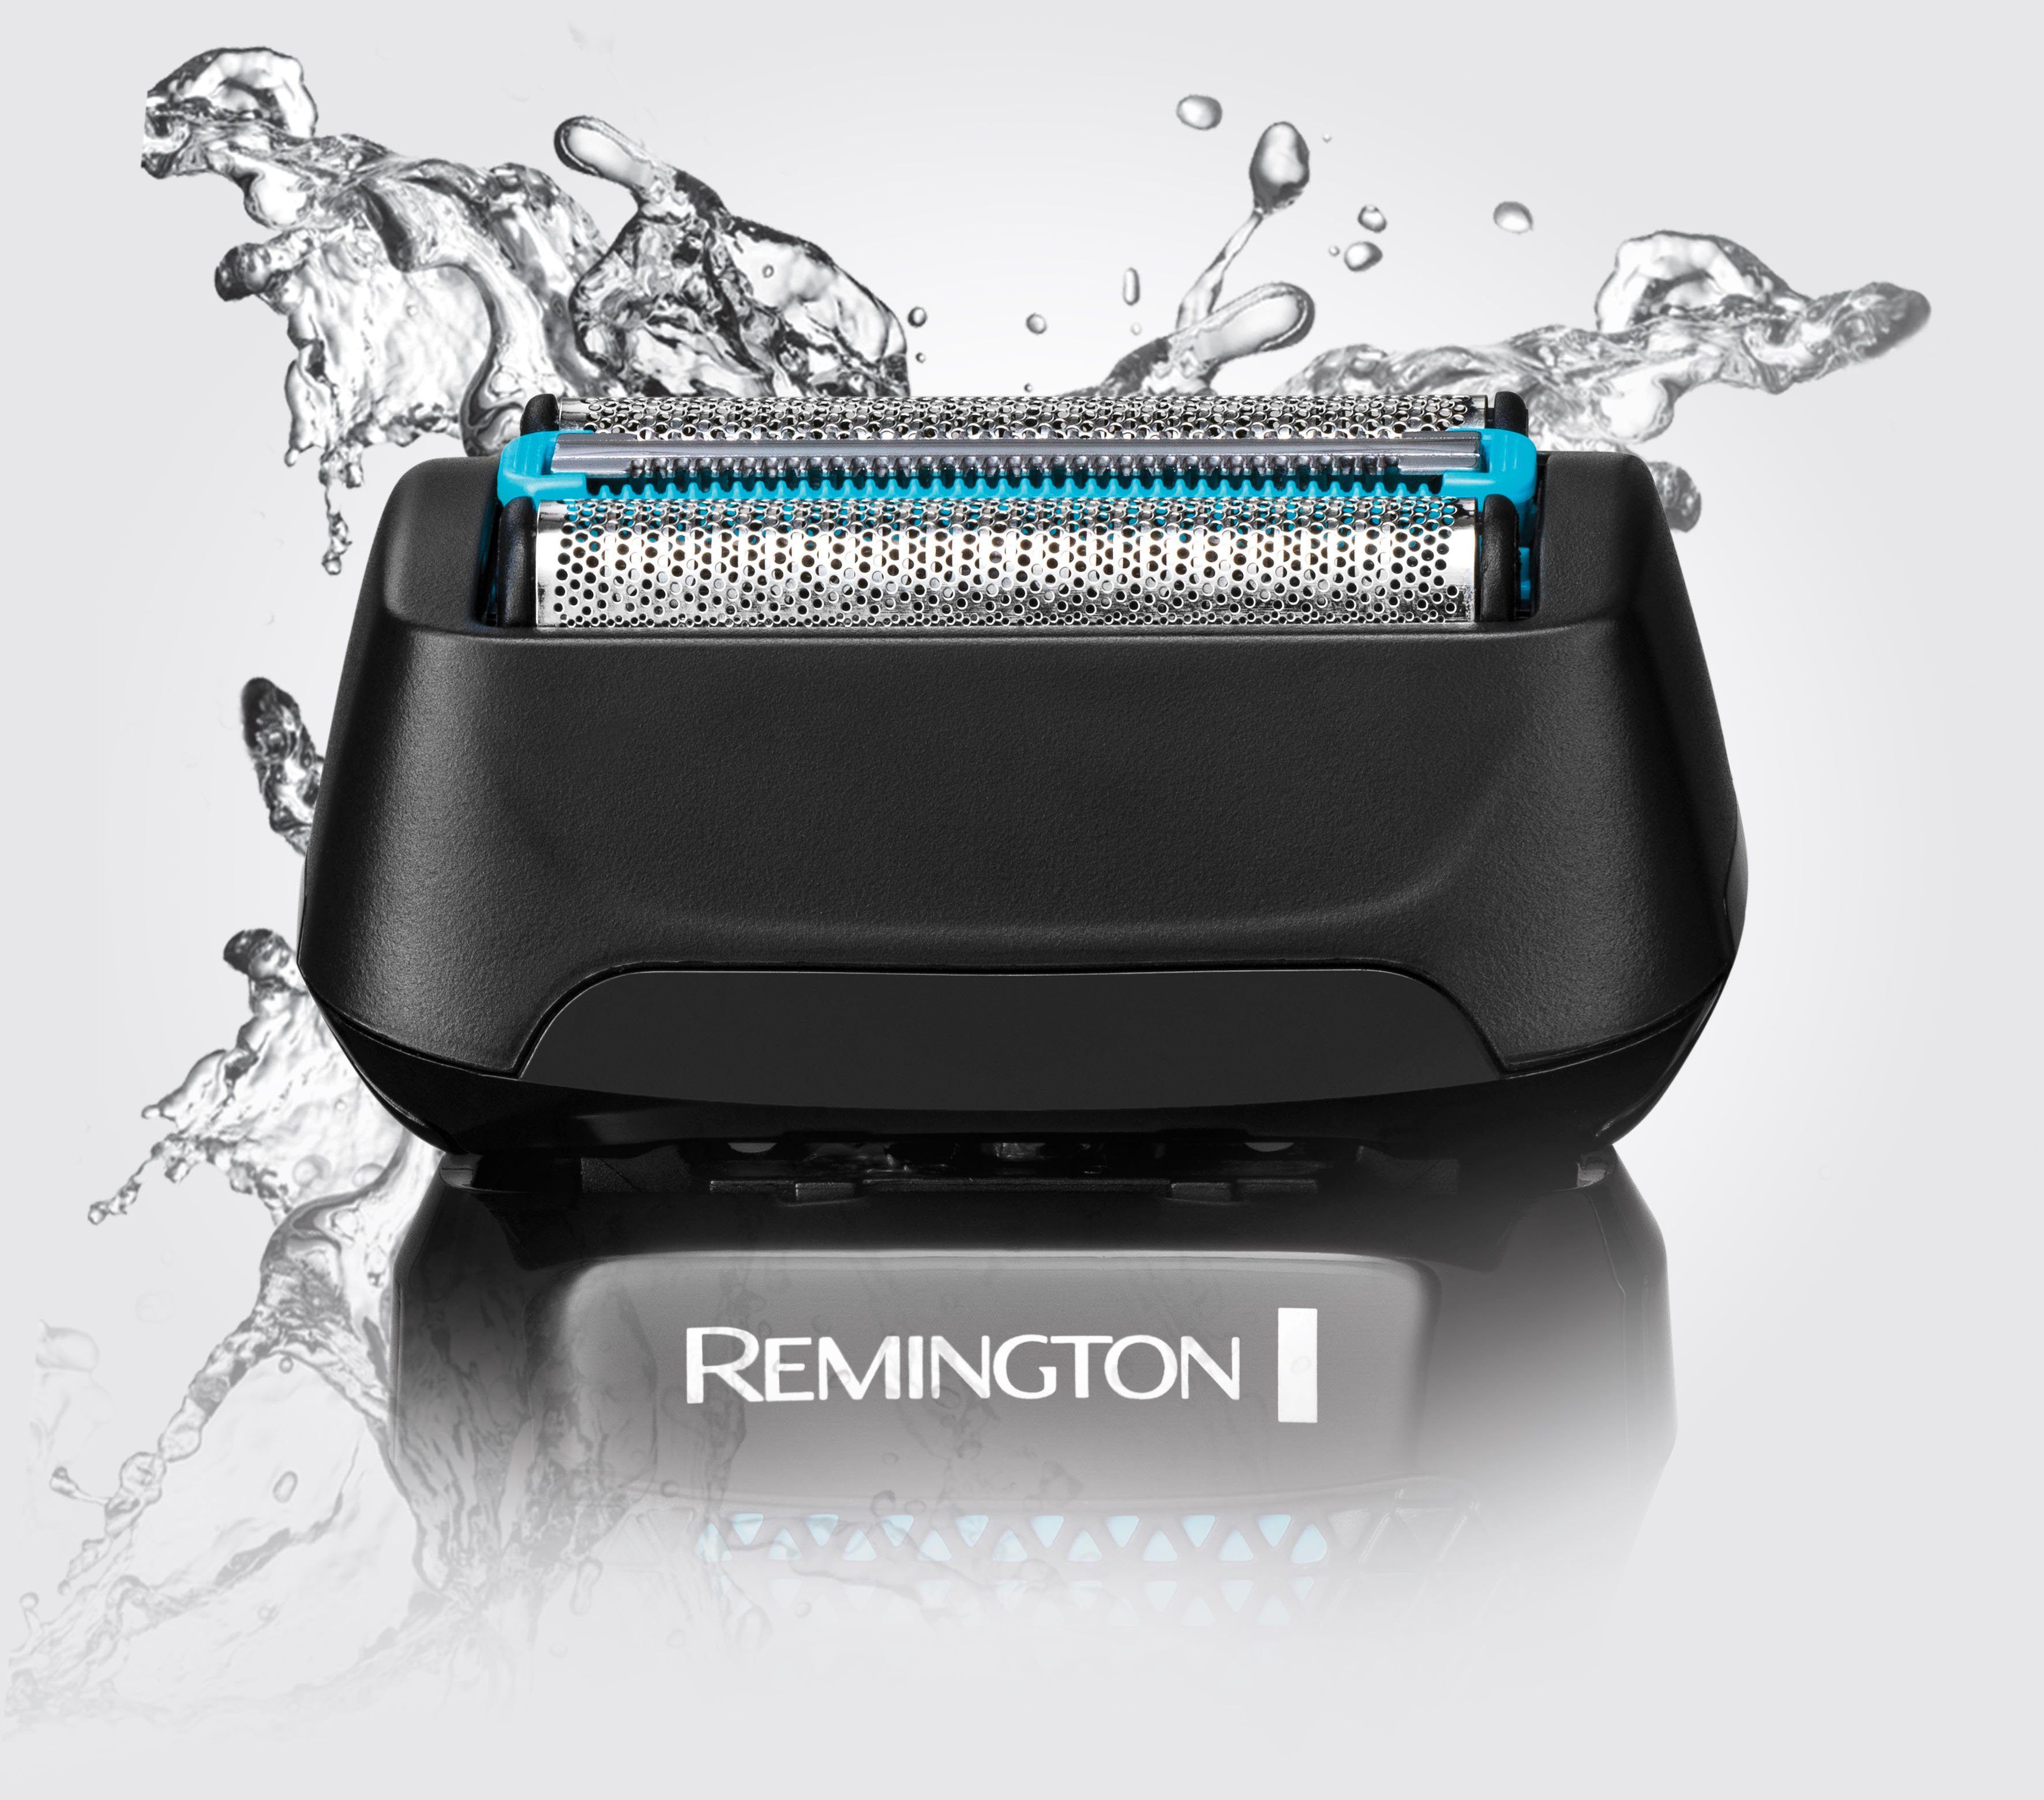 Remington Elektrorasierer F6000 Style Wasserdichtes Styler mit Nass 100 Aufsätze: 1, wasserdicht, Langhaartrimmer, 3-Tage-Bart % Rasiersystem, & Trockenrasur